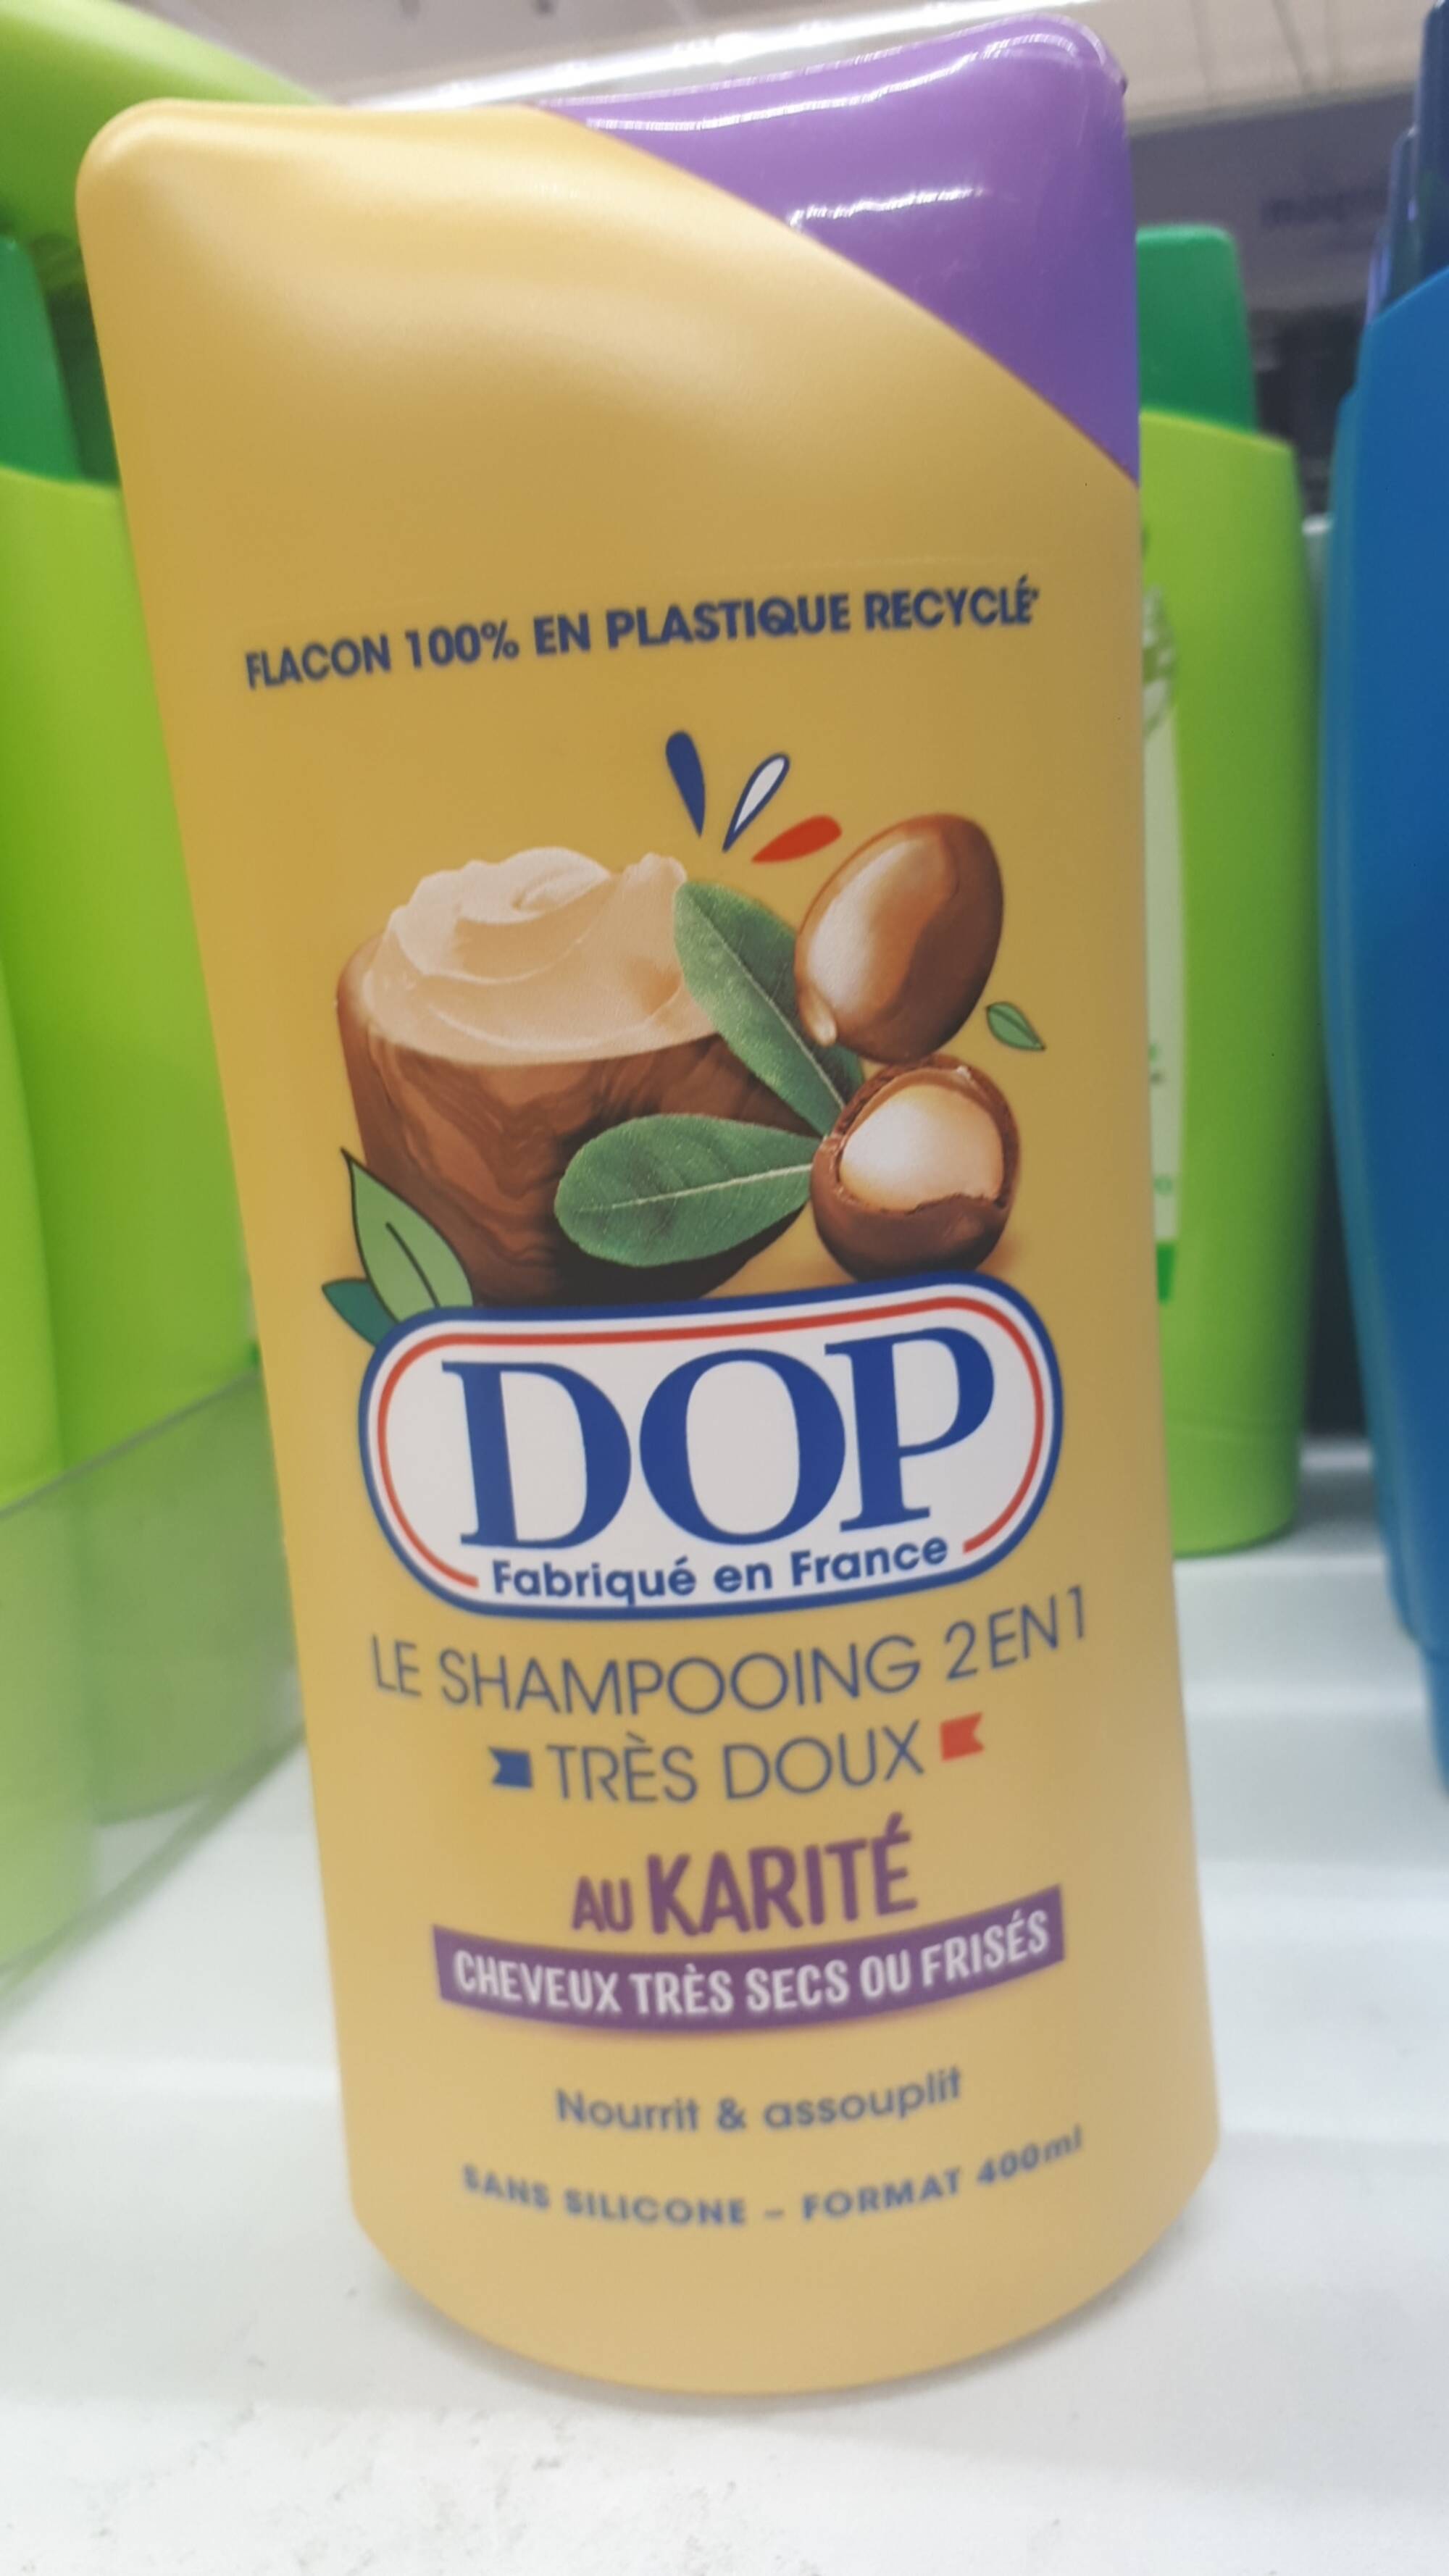 DOP - Le shampooing 2en1 très doux au karité